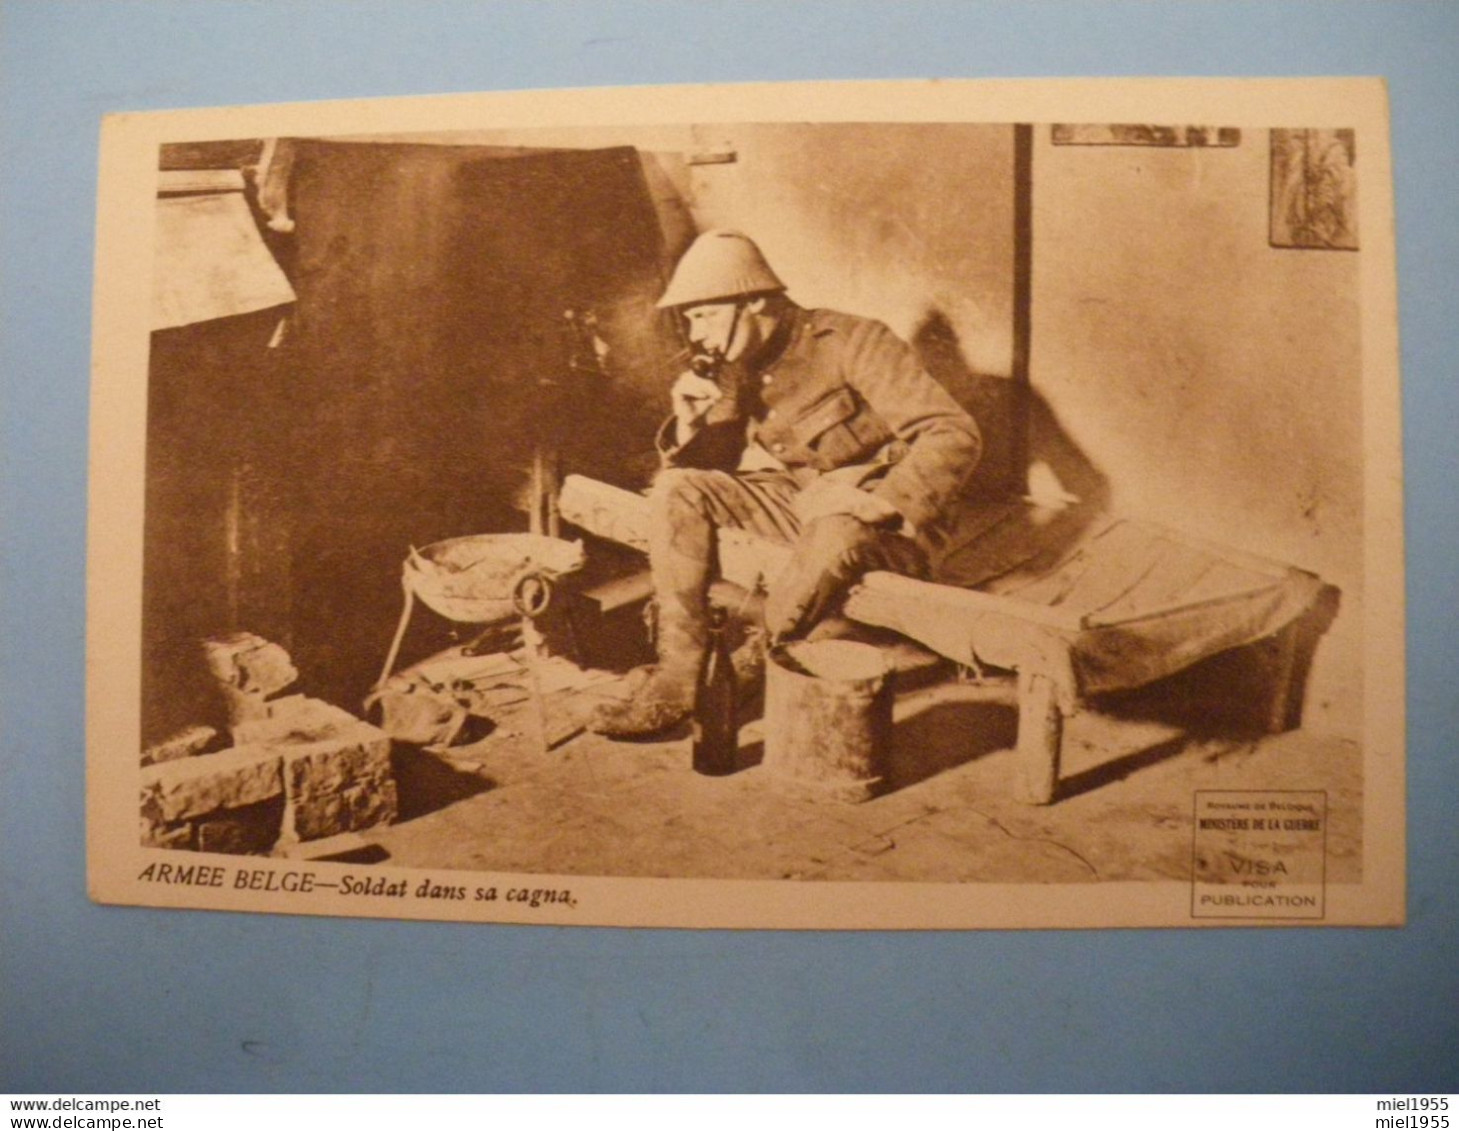 WW1 Armée Belge Soldat Dans Sa Cagna Emile VANDERVELDE (6 Photos) - Guerre 1914-18